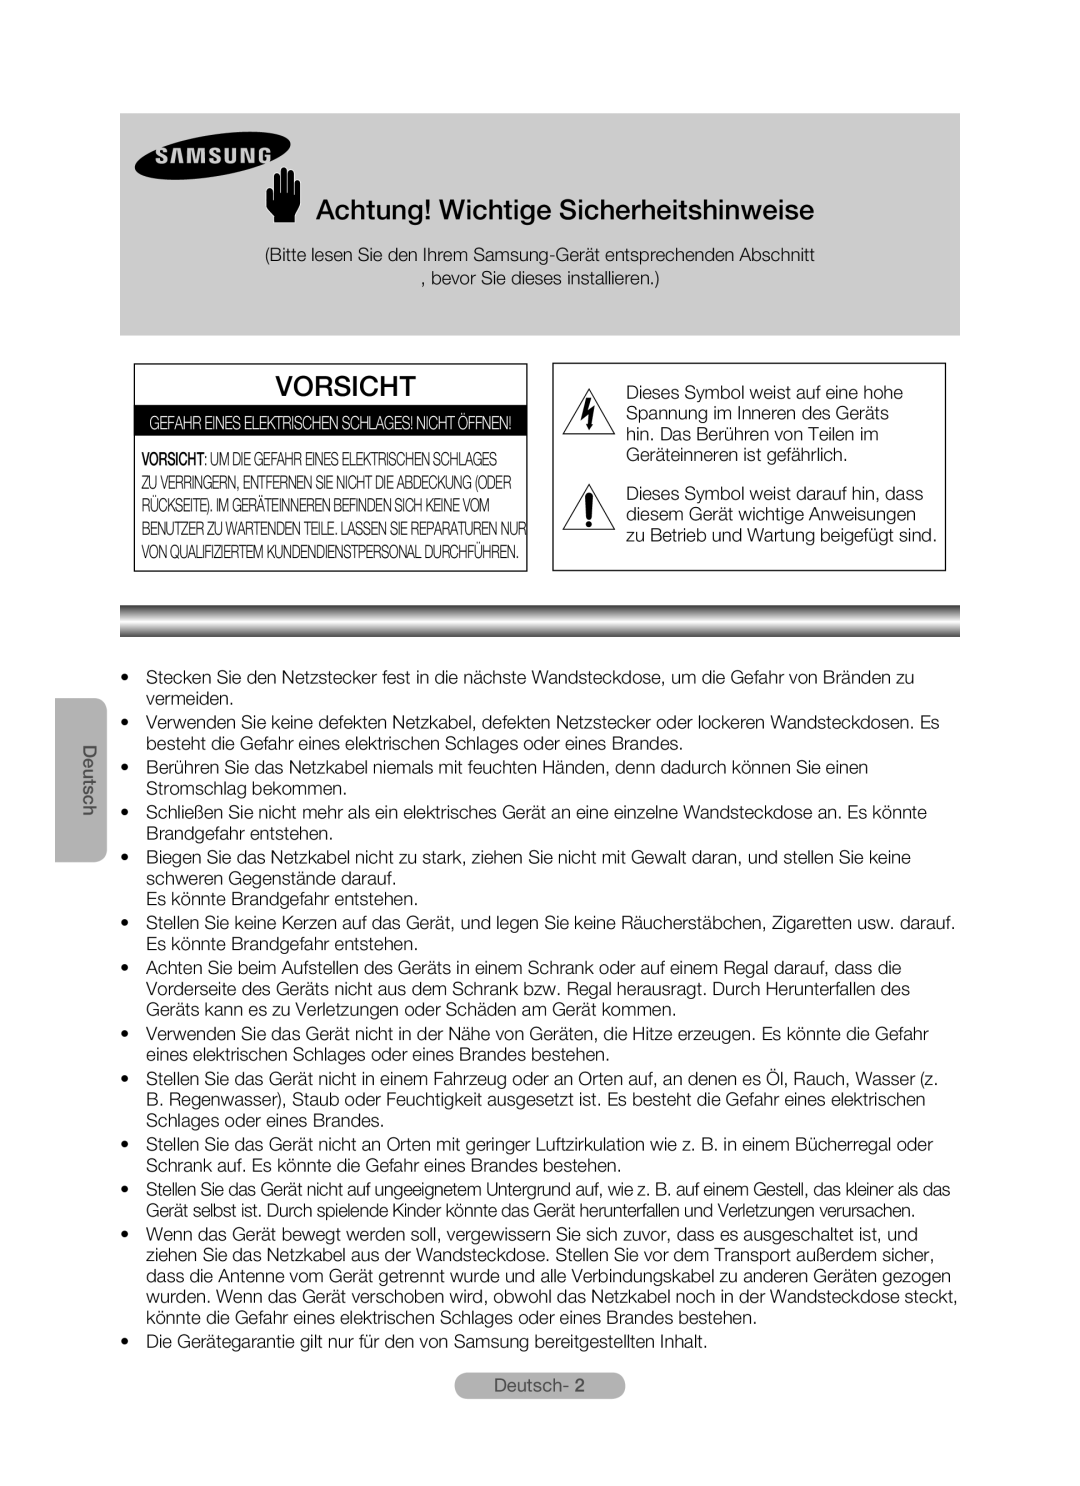 Samsung MR-16SB2 manual Achtung! Wichtige Sicherheitshinweise, Vorsicht, Deutsch-  